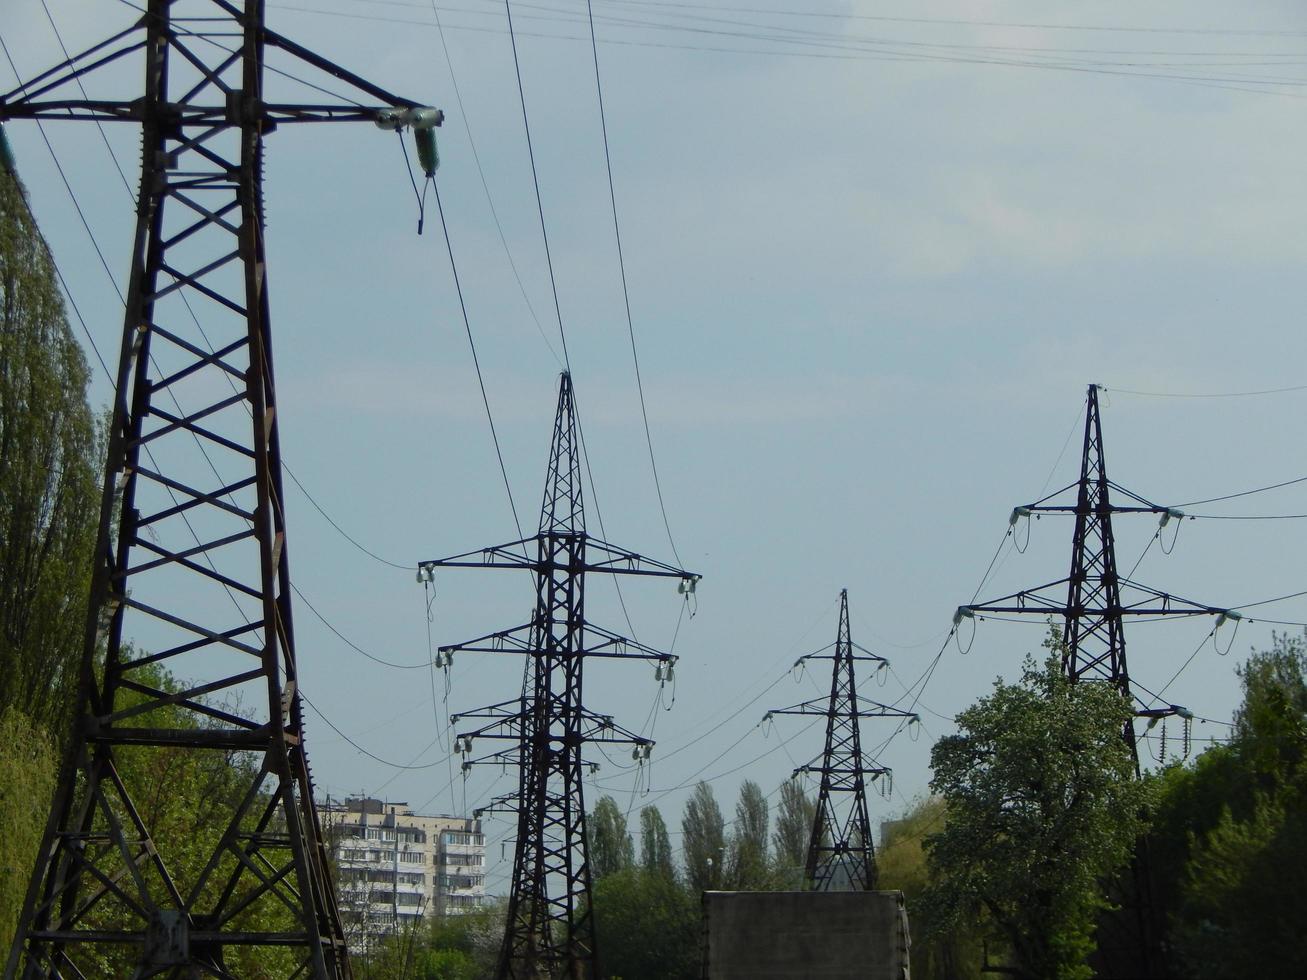 kraftledningar i staden, ansträngda ledningar på en metallkonstruktion foto